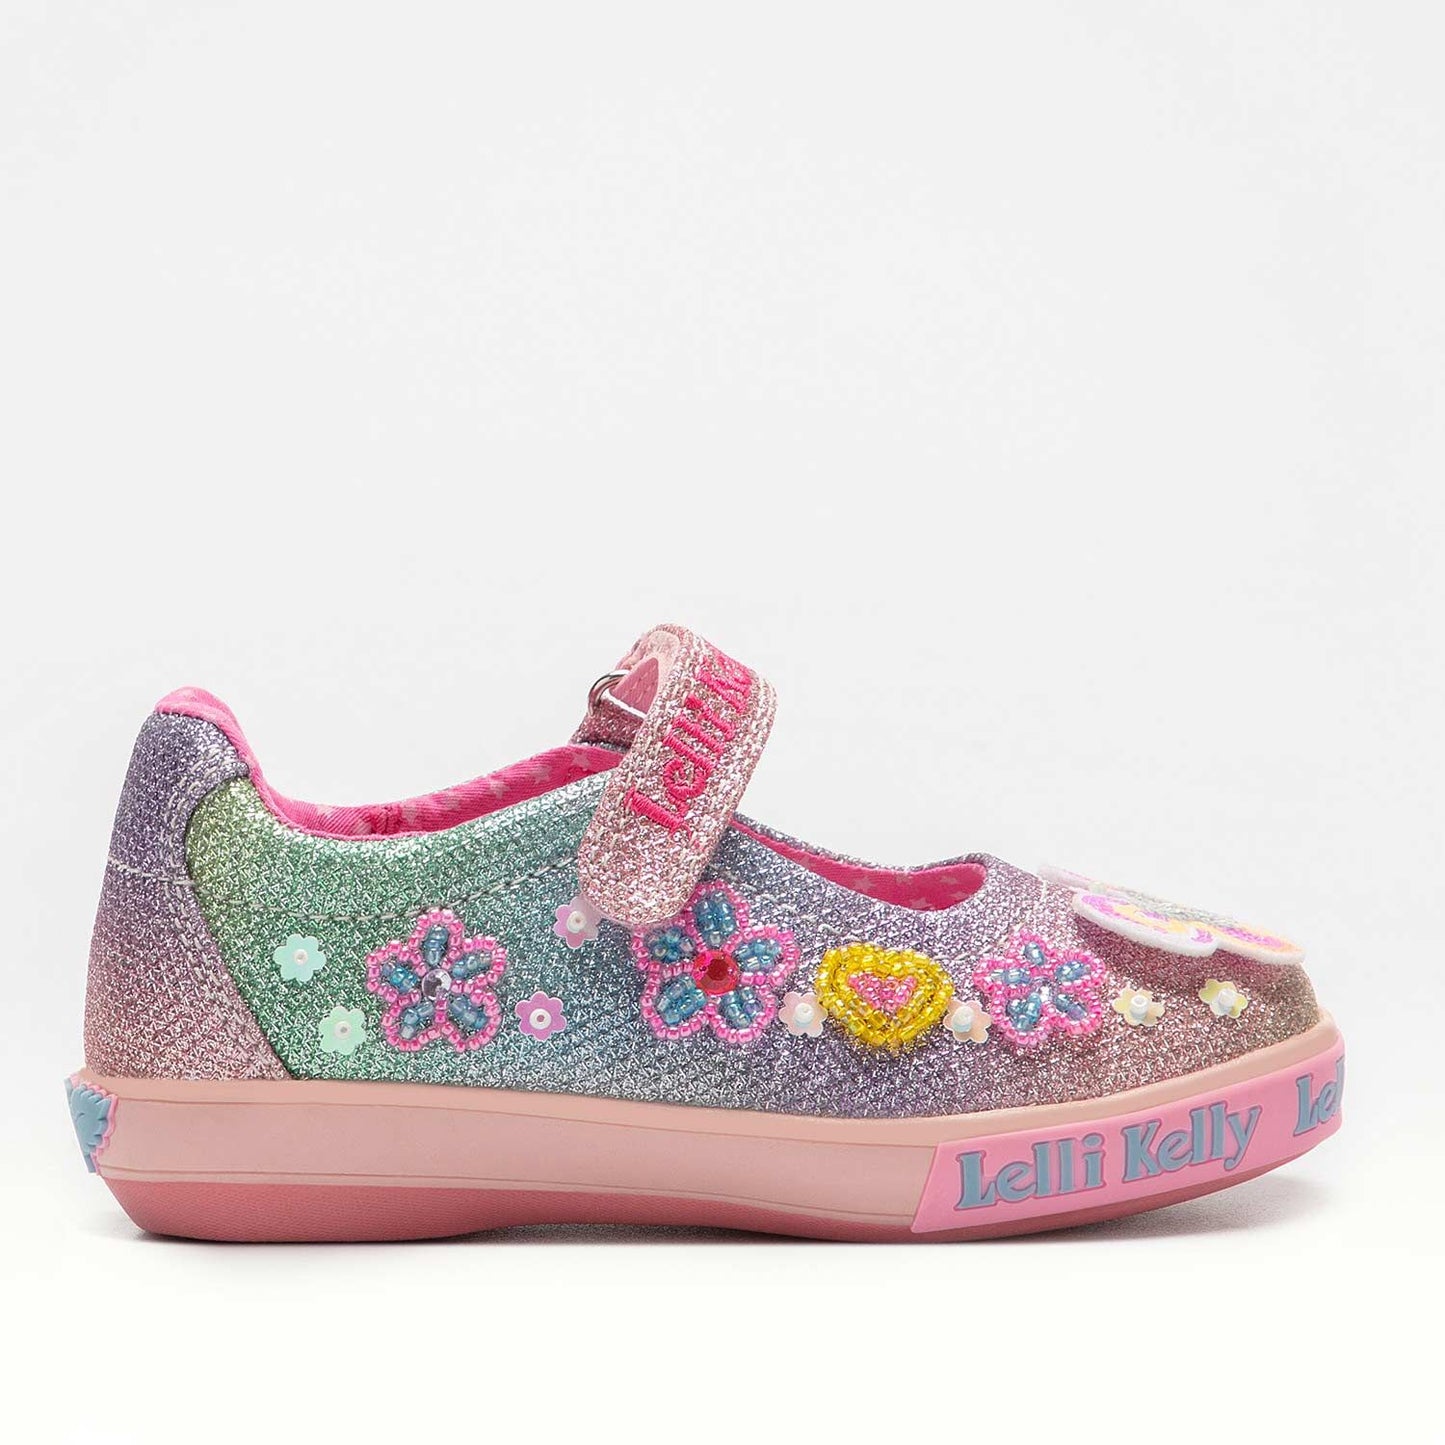 Lelli Kelly Rainbow butterfly strap - Kirbys Footwear Ltd